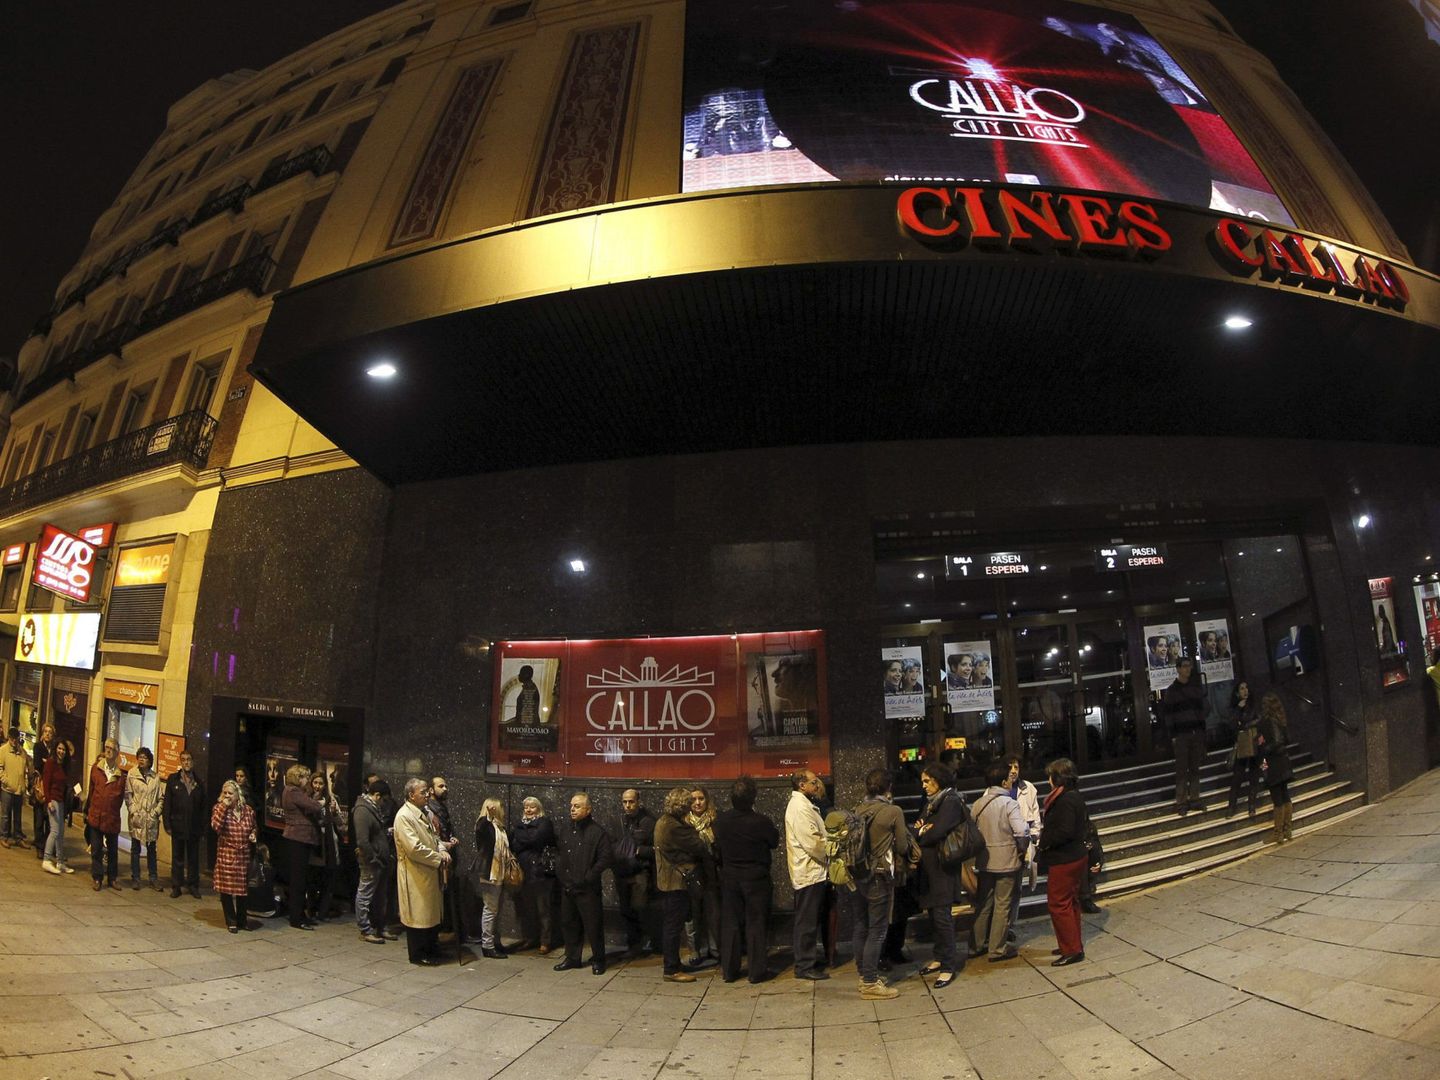 Cine Callao, uno de los más emblemáticos de Madrid. (EFE)